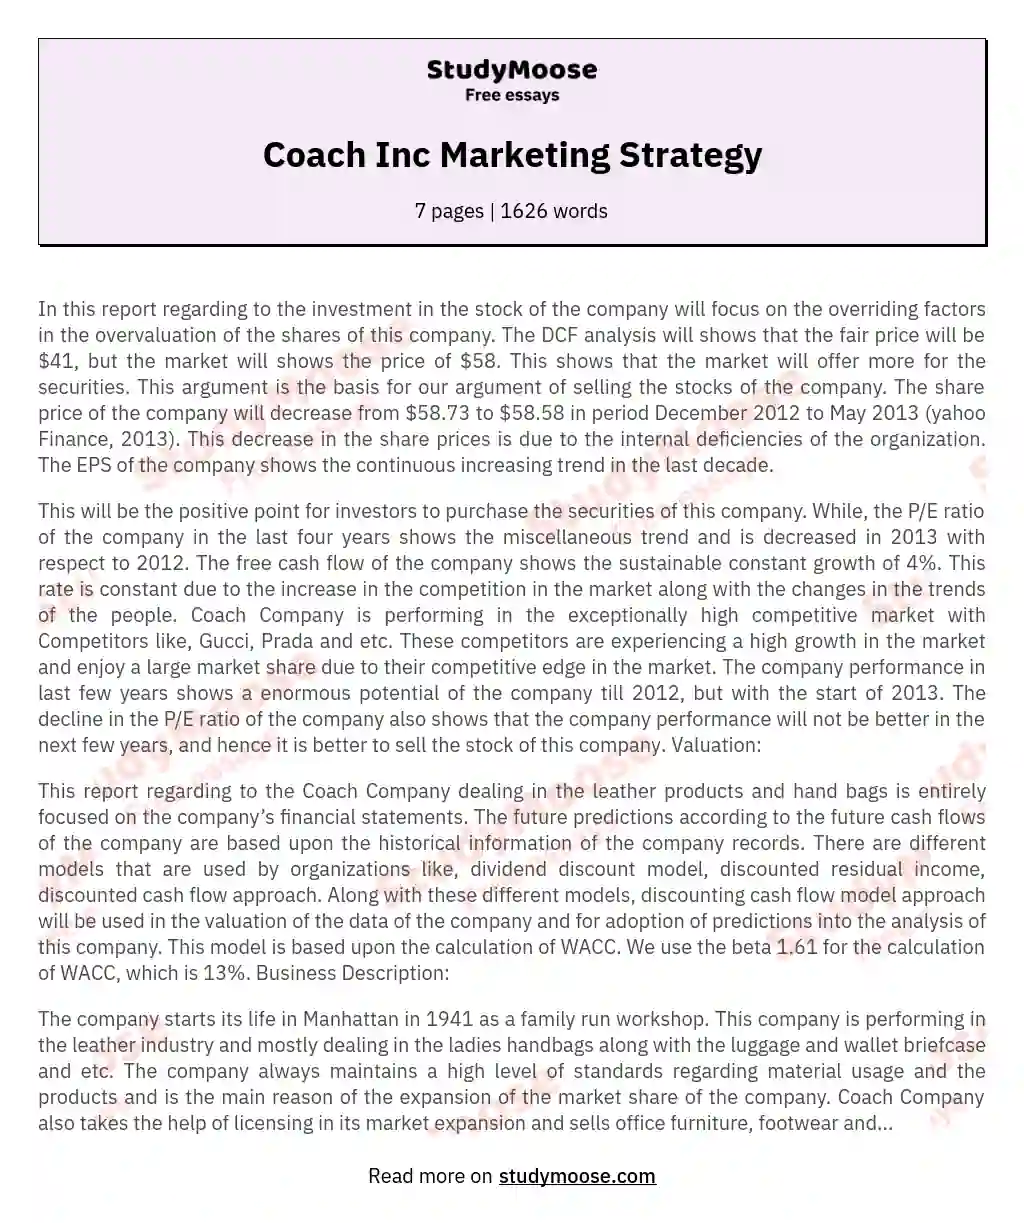 Coach Inc Marketing Strategy essay